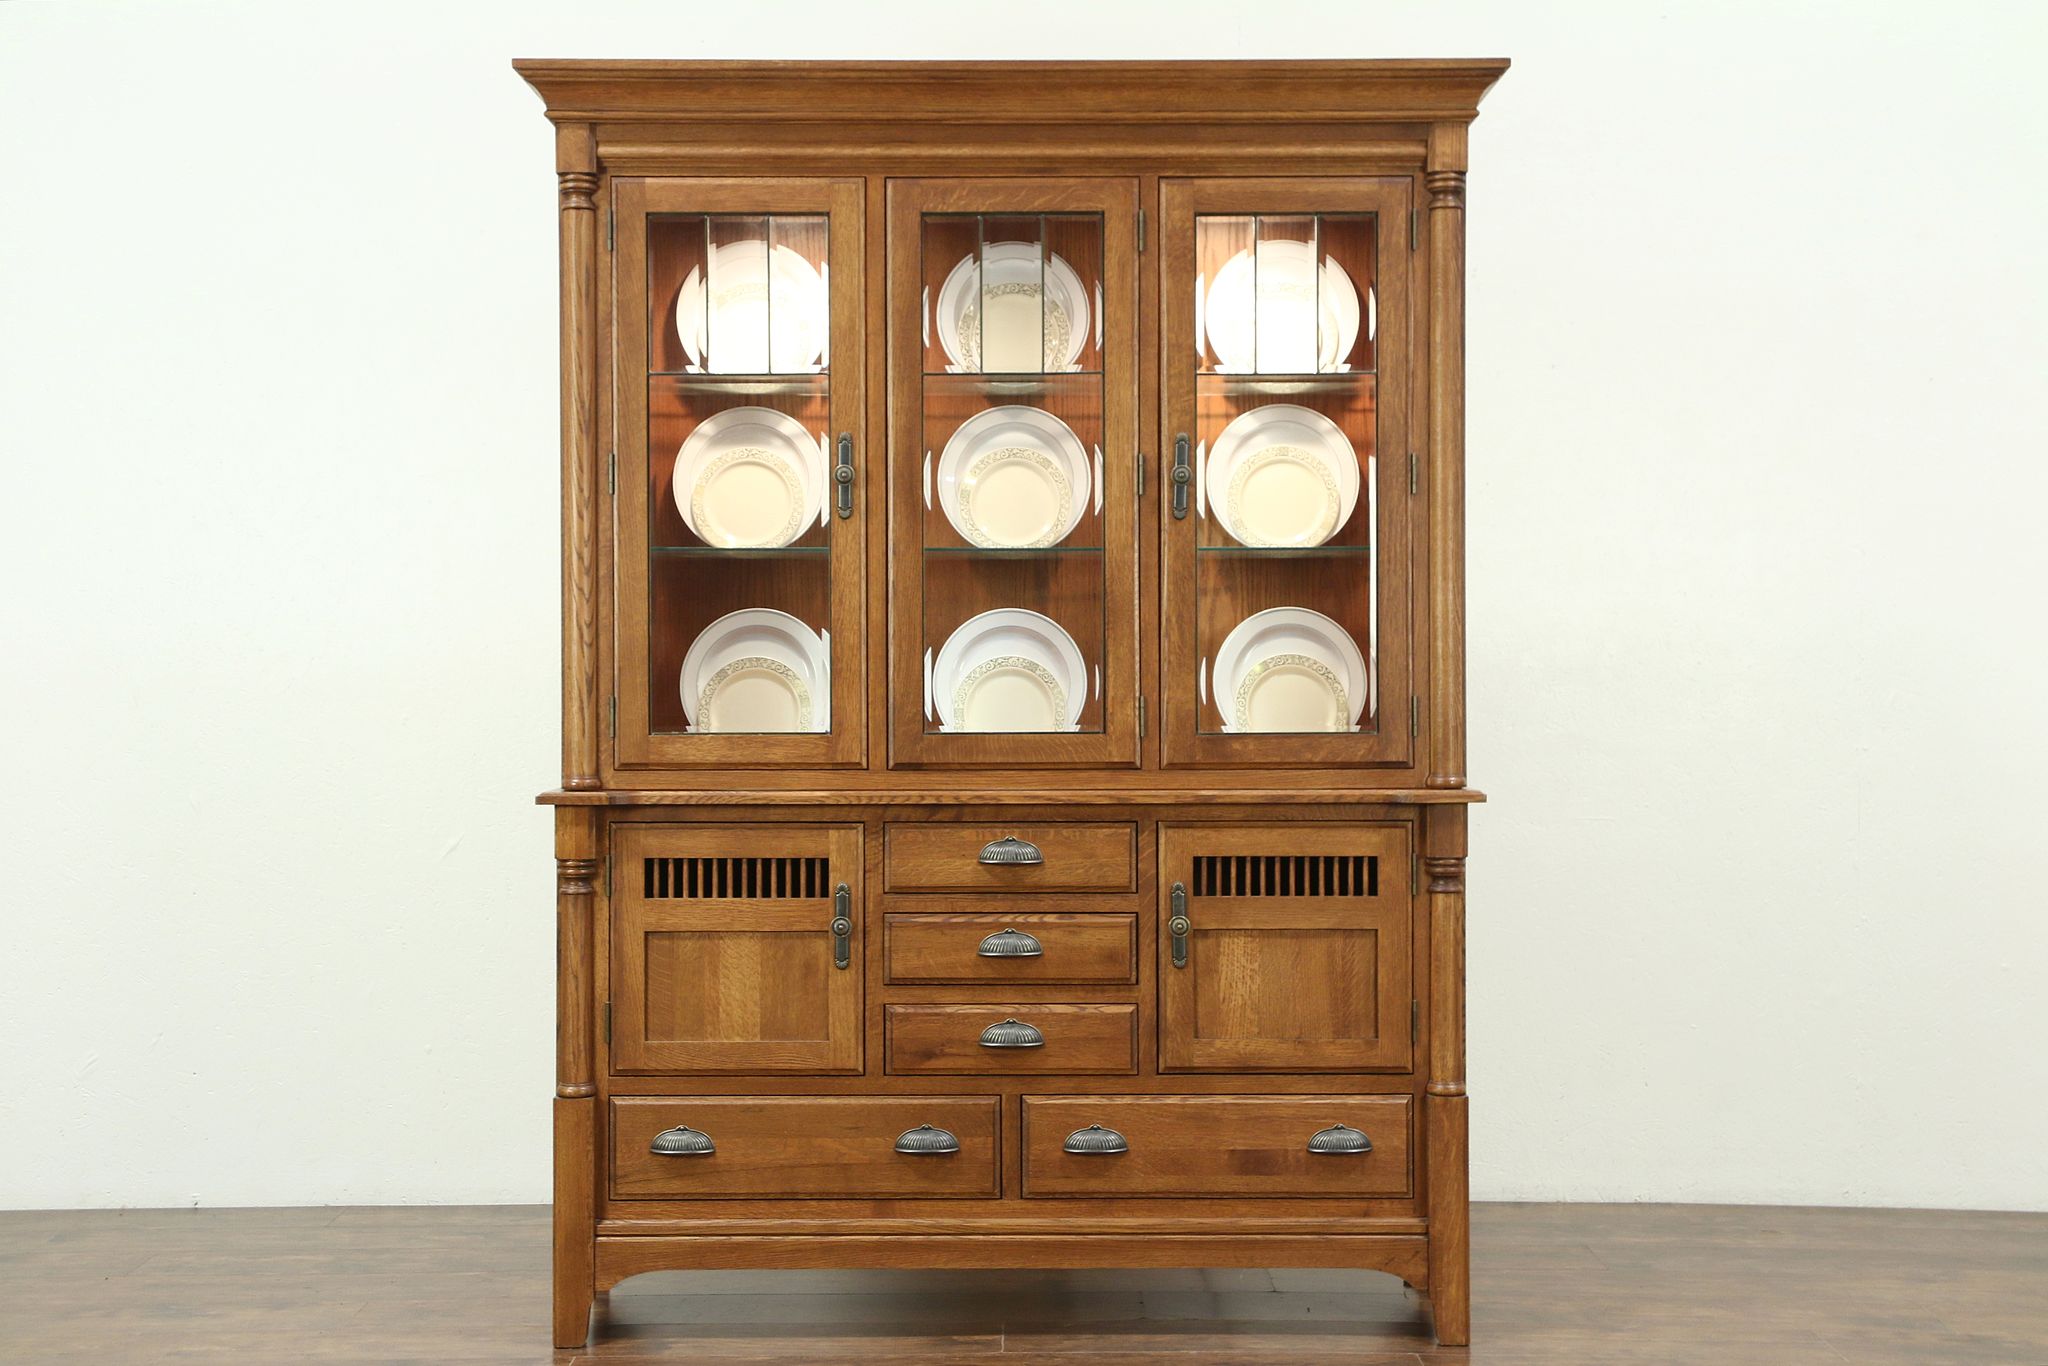 Sold Oak Vintage China Display Cabinet Lighted Beveled Leaded